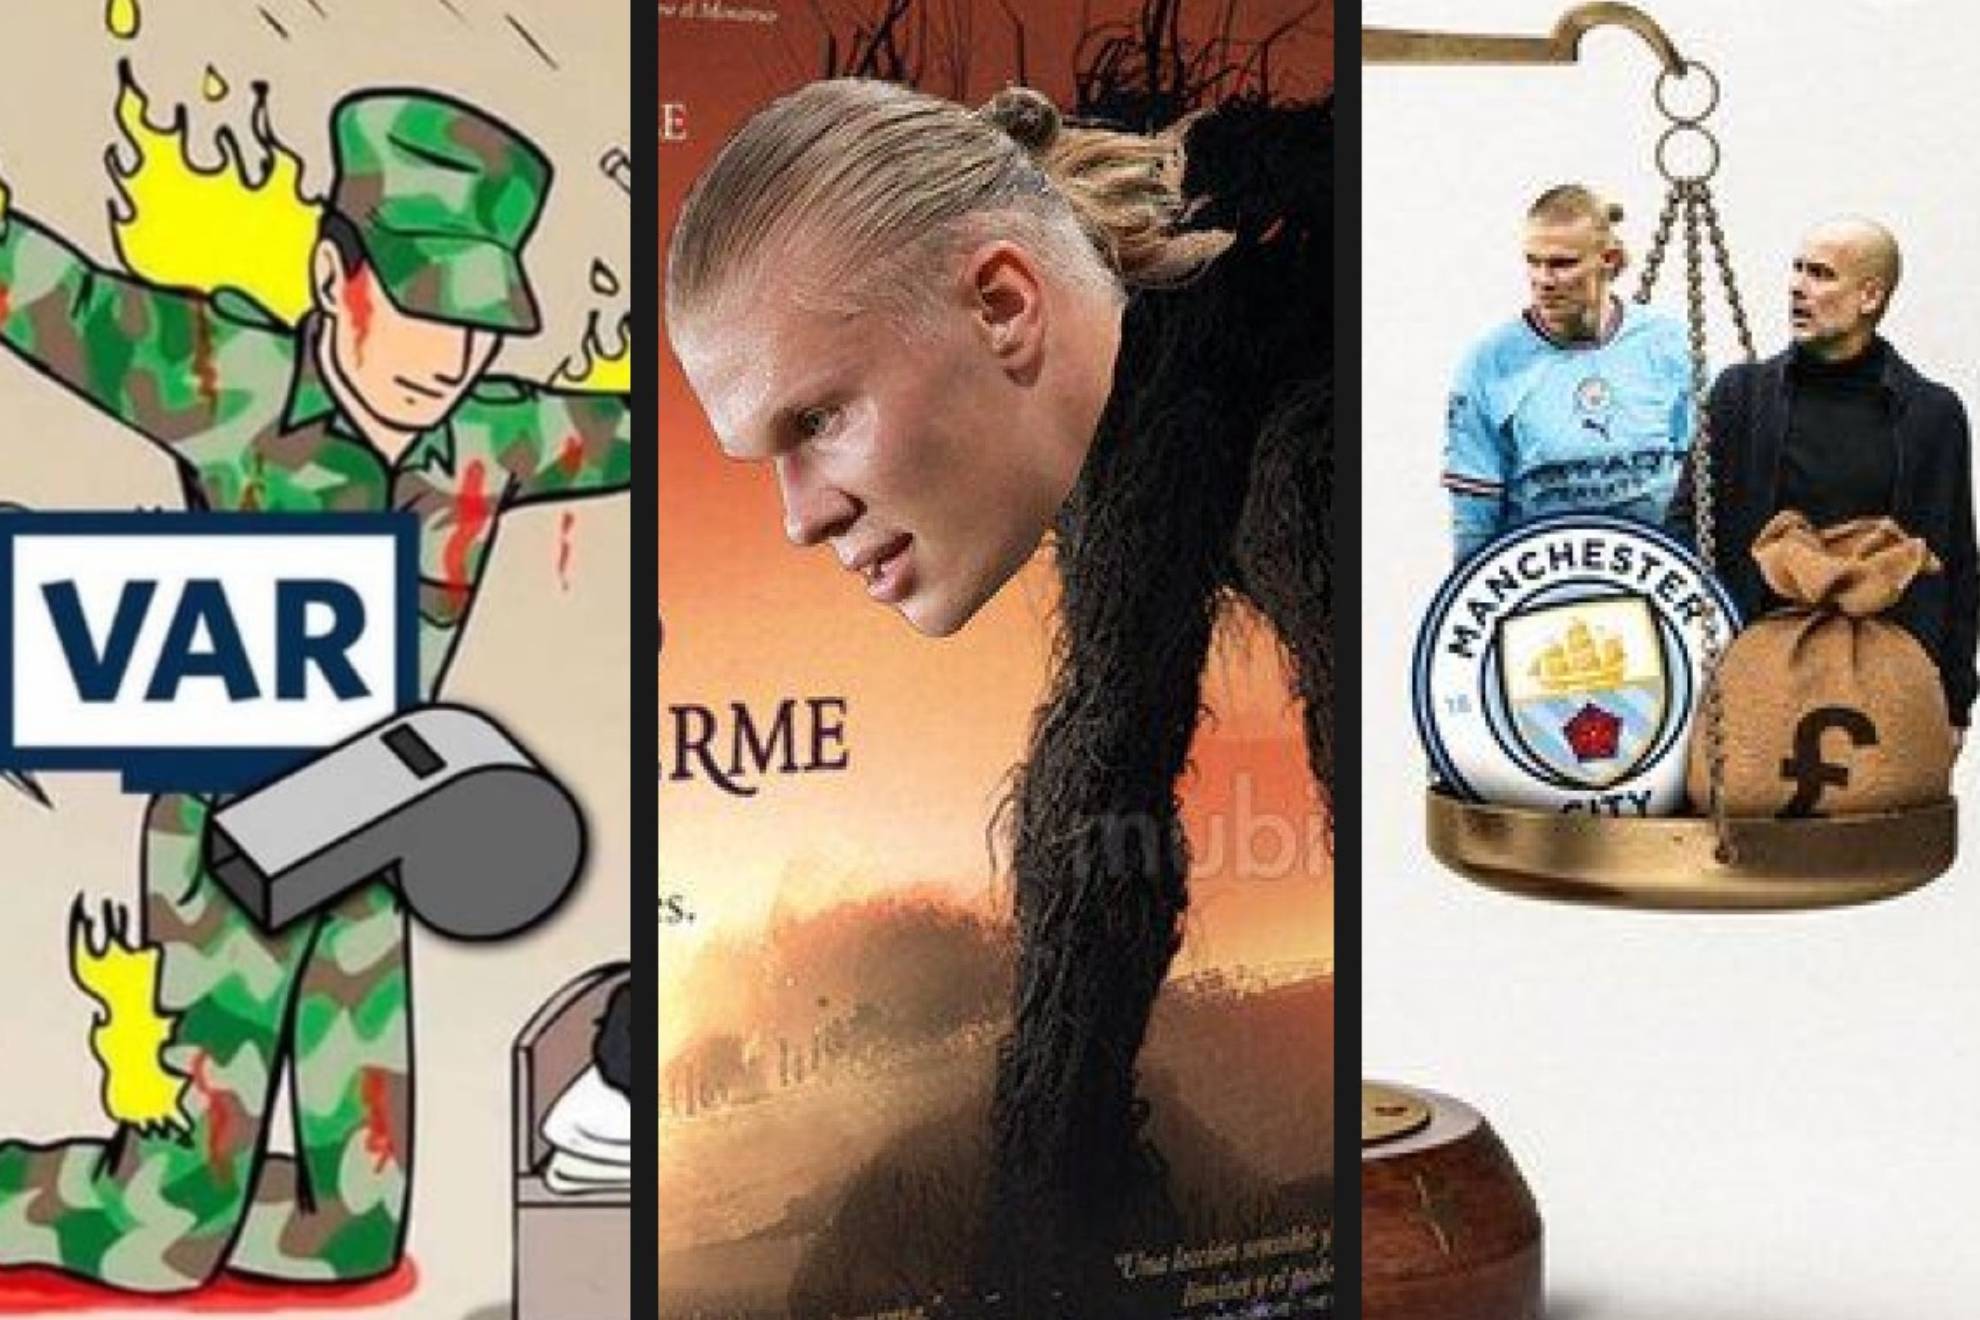 El partido de Champions League que empataron 1-1 el Real Madrid y el Manchester City generó varias tendencias en las redes sociales y se convirtió en una gran generador de memes.